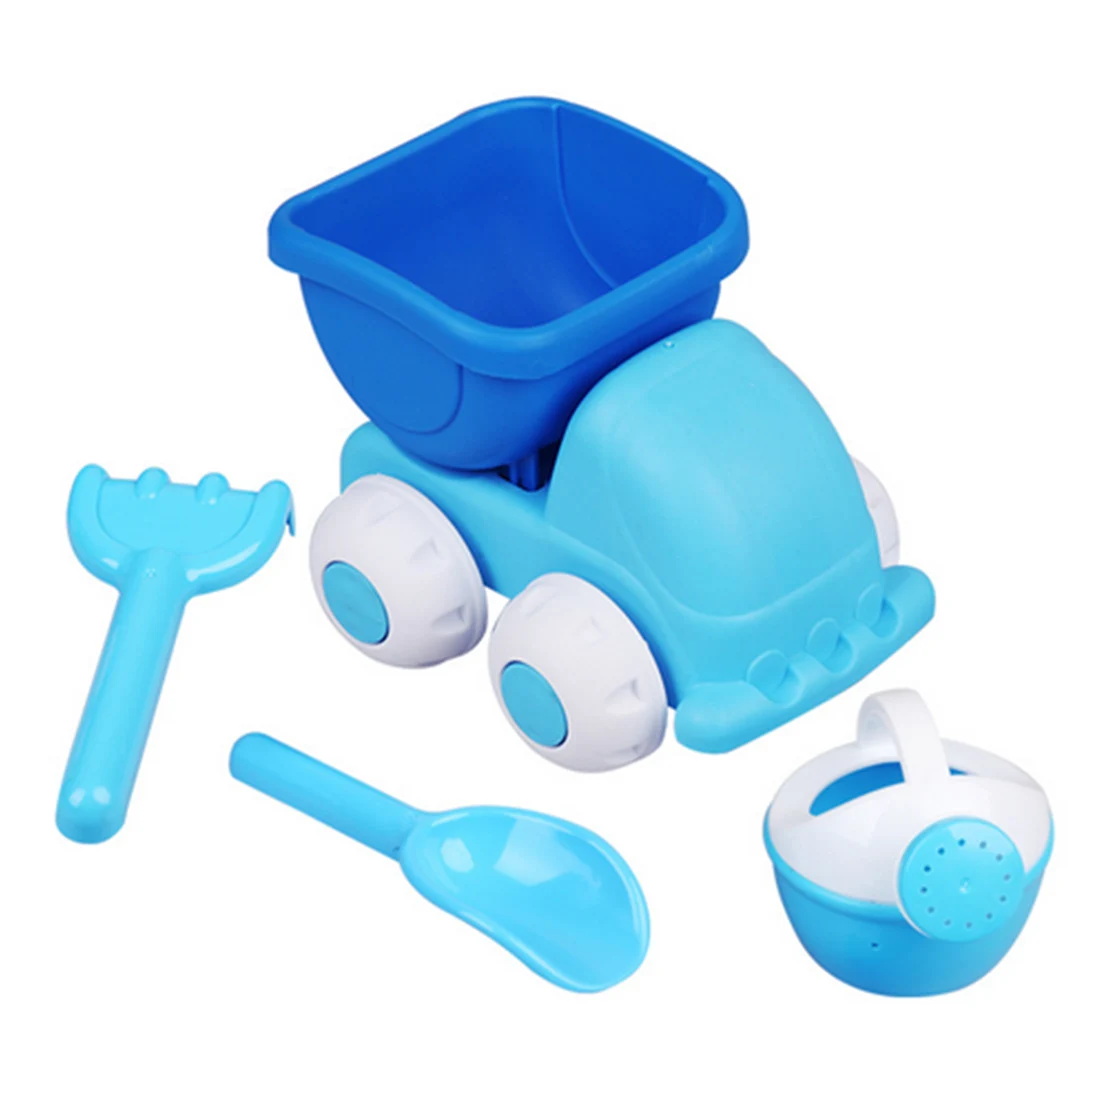 4 шт. Sandbeach детские игрушки для пляжа автомобиля Spade набор водяного кувшина открытый пляж шлифовальные игрушки подарок для детей